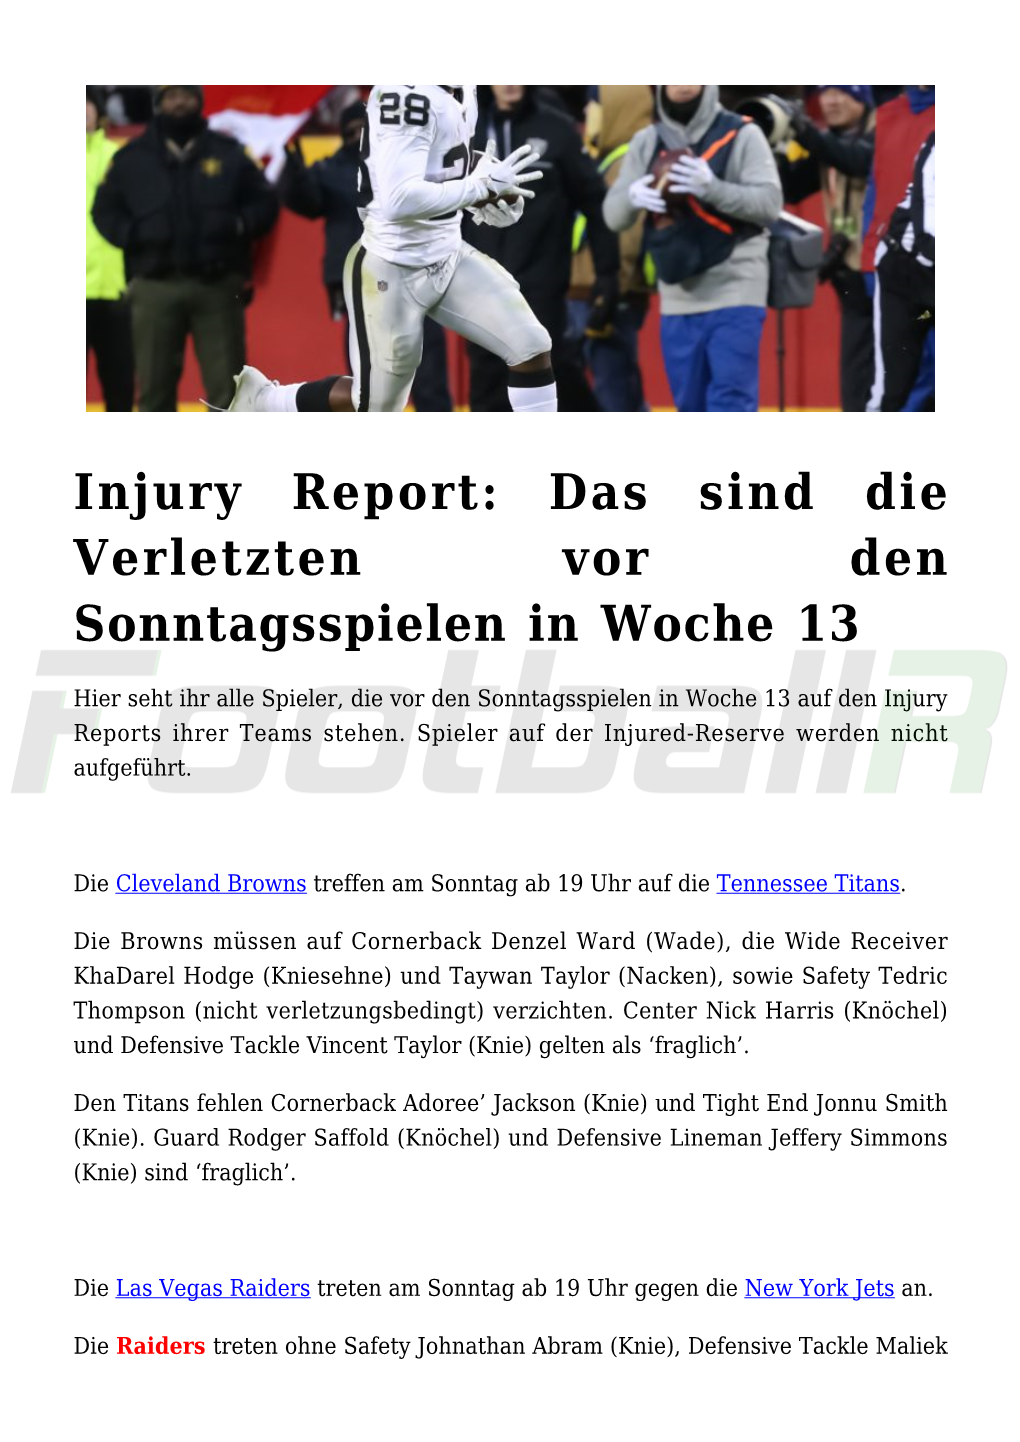 Injury Report: Das Sind Die Verletzten Vor Den Sonntagsspielen in Woche 13